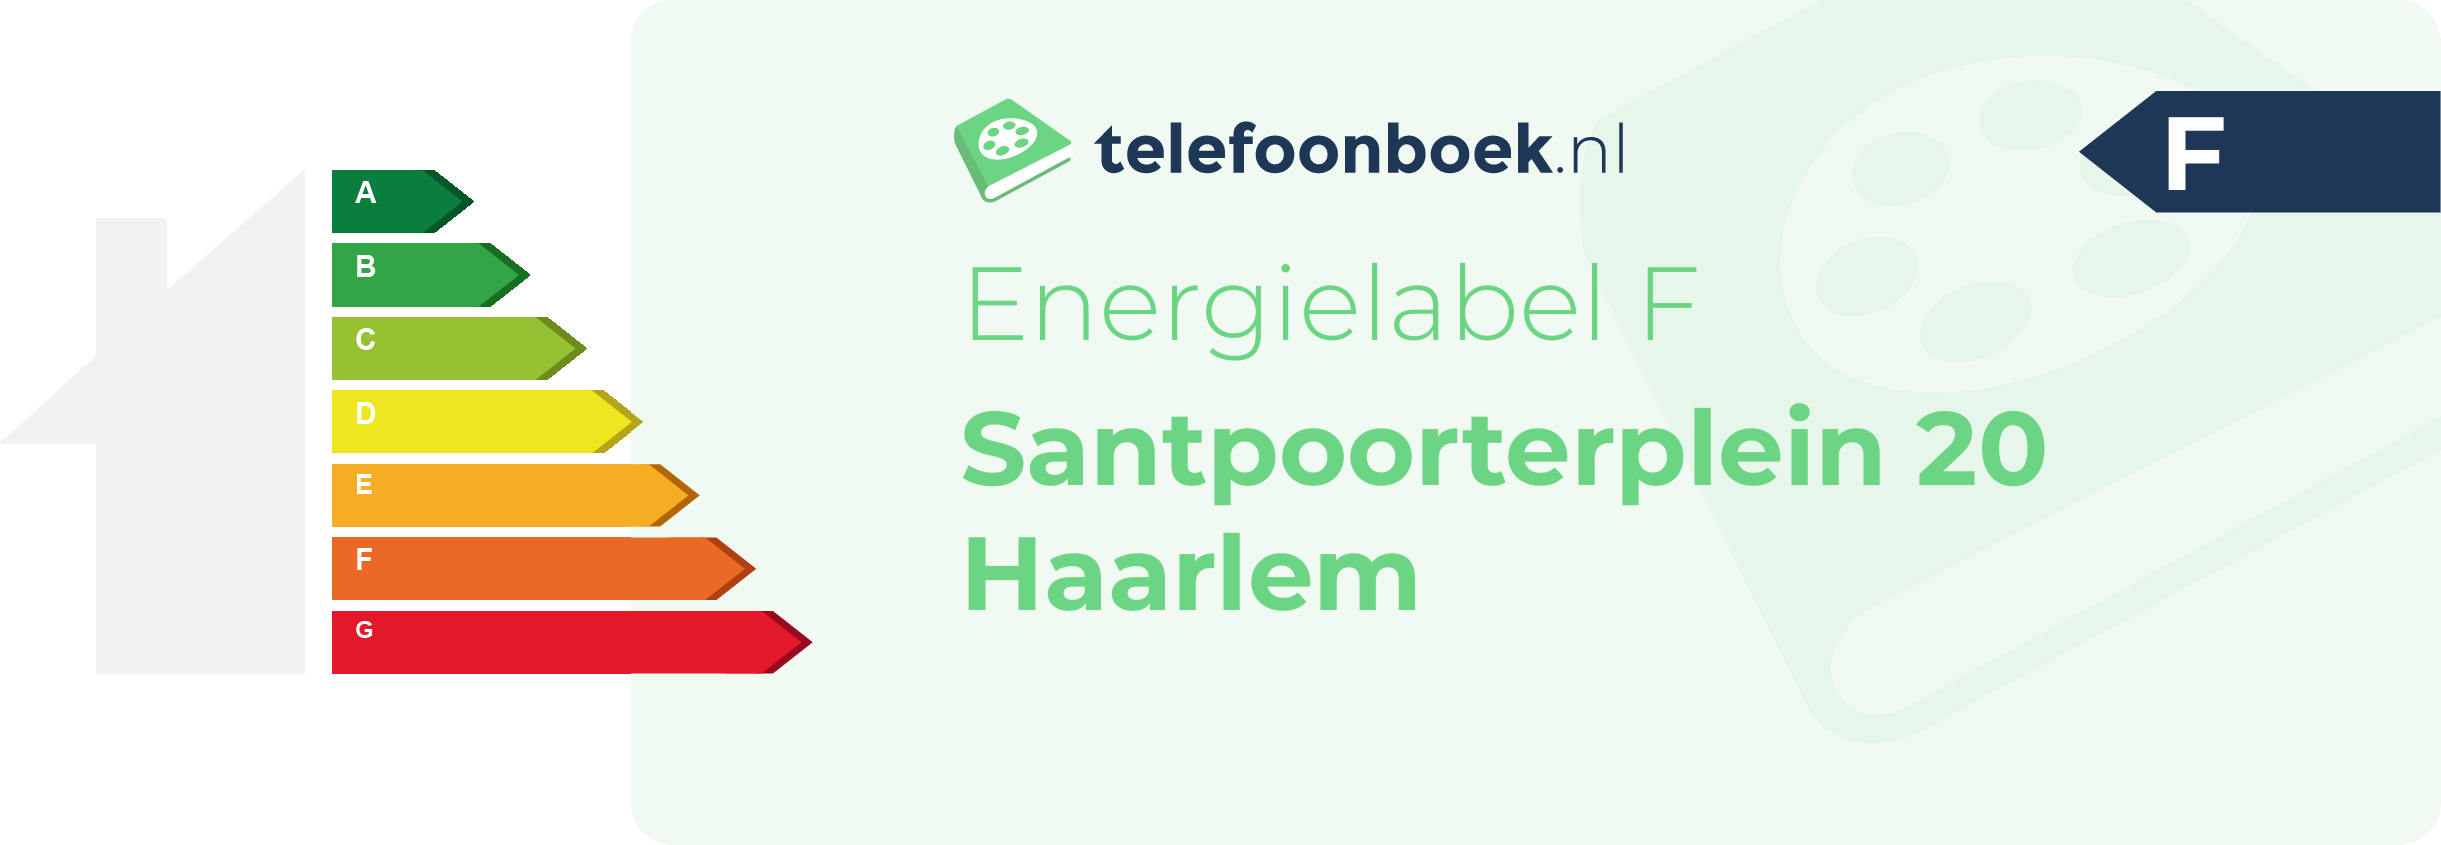 Energielabel Santpoorterplein 20 Haarlem